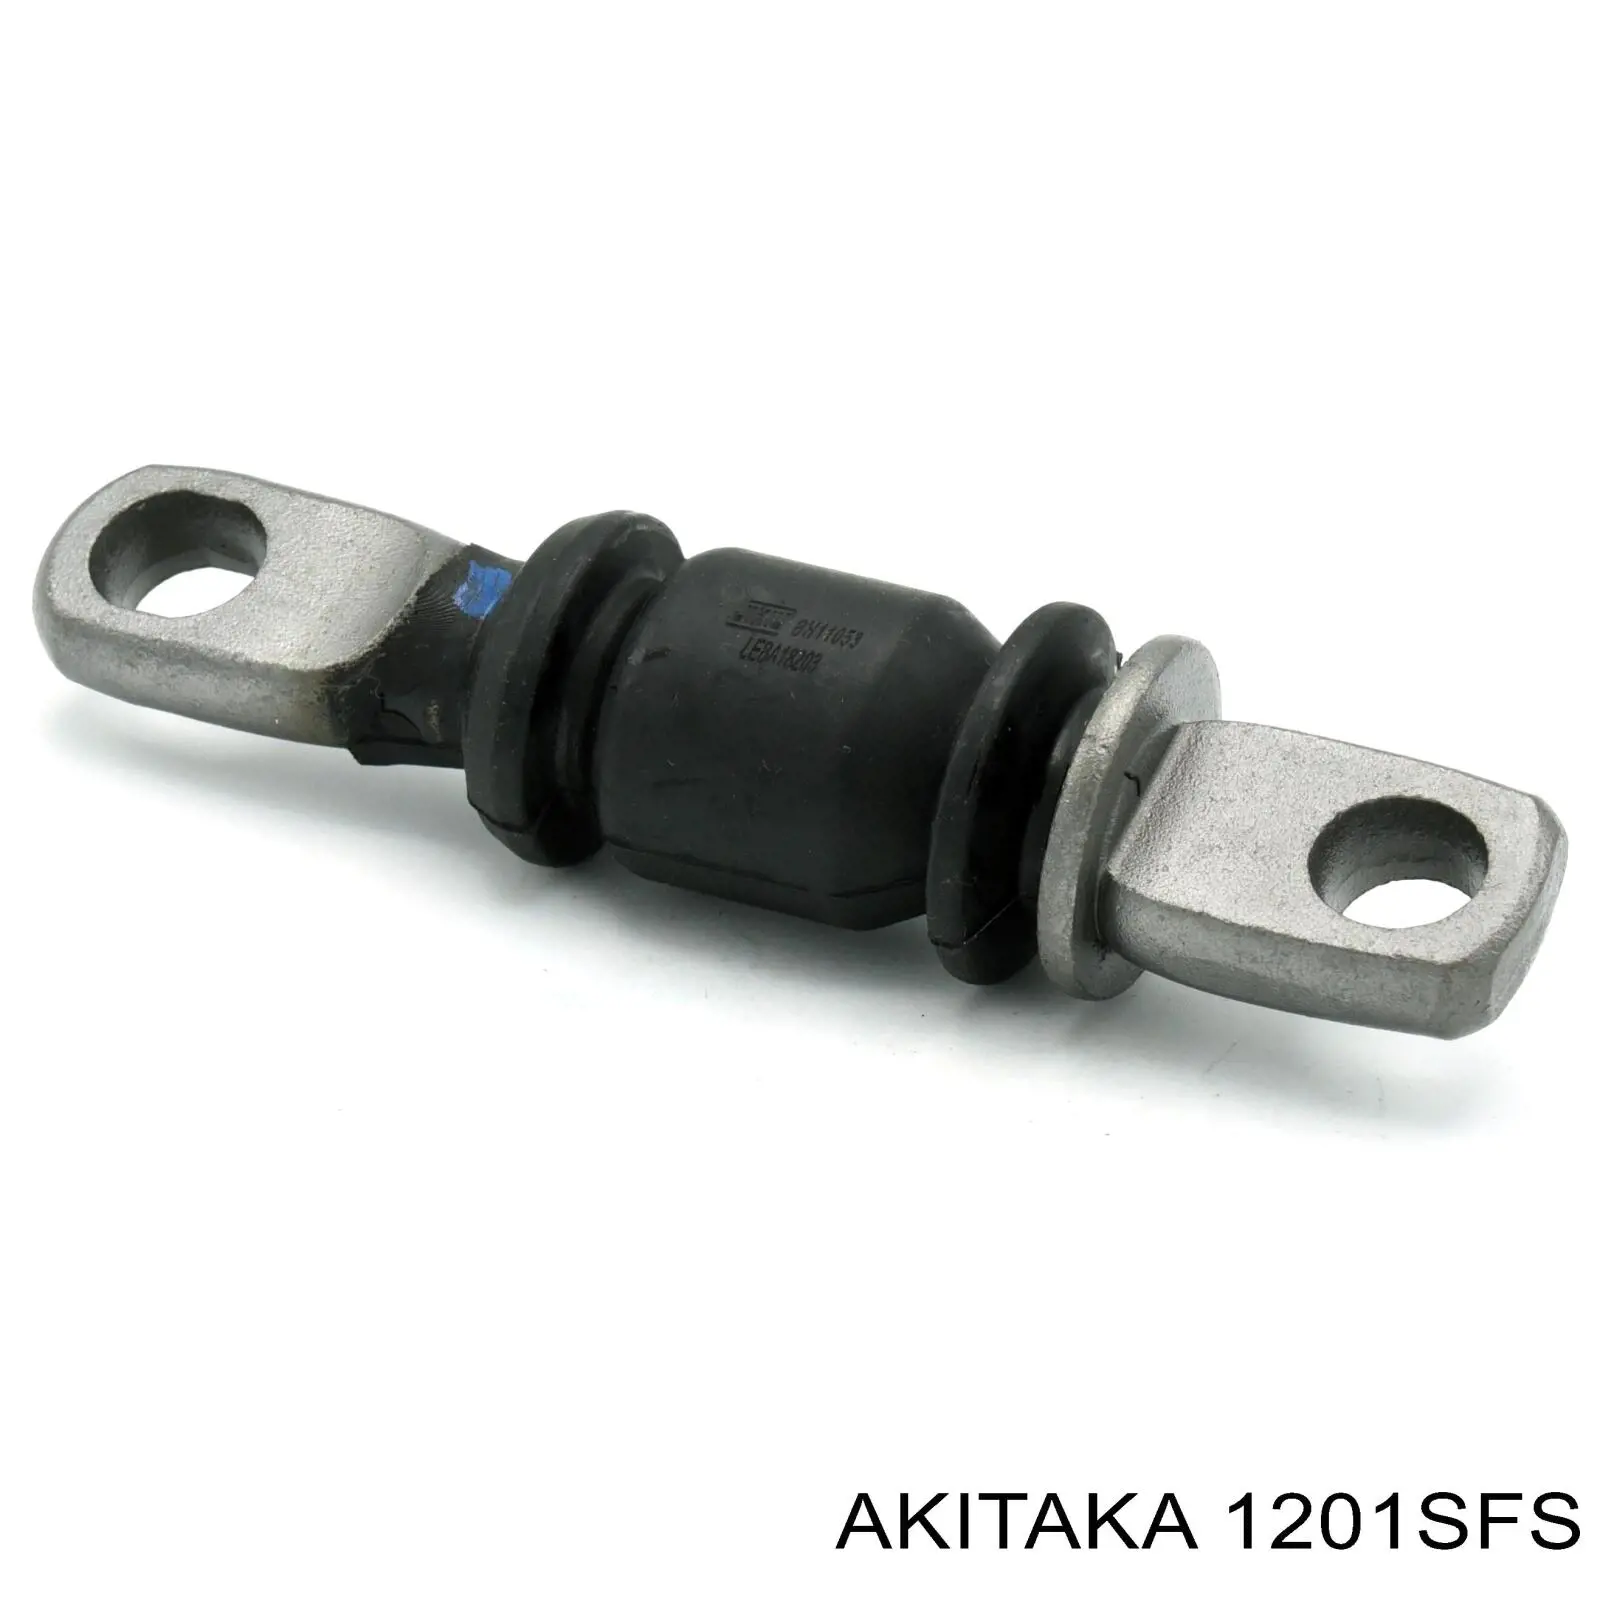 1201SFS Akitaka silentblock de suspensión delantero inferior